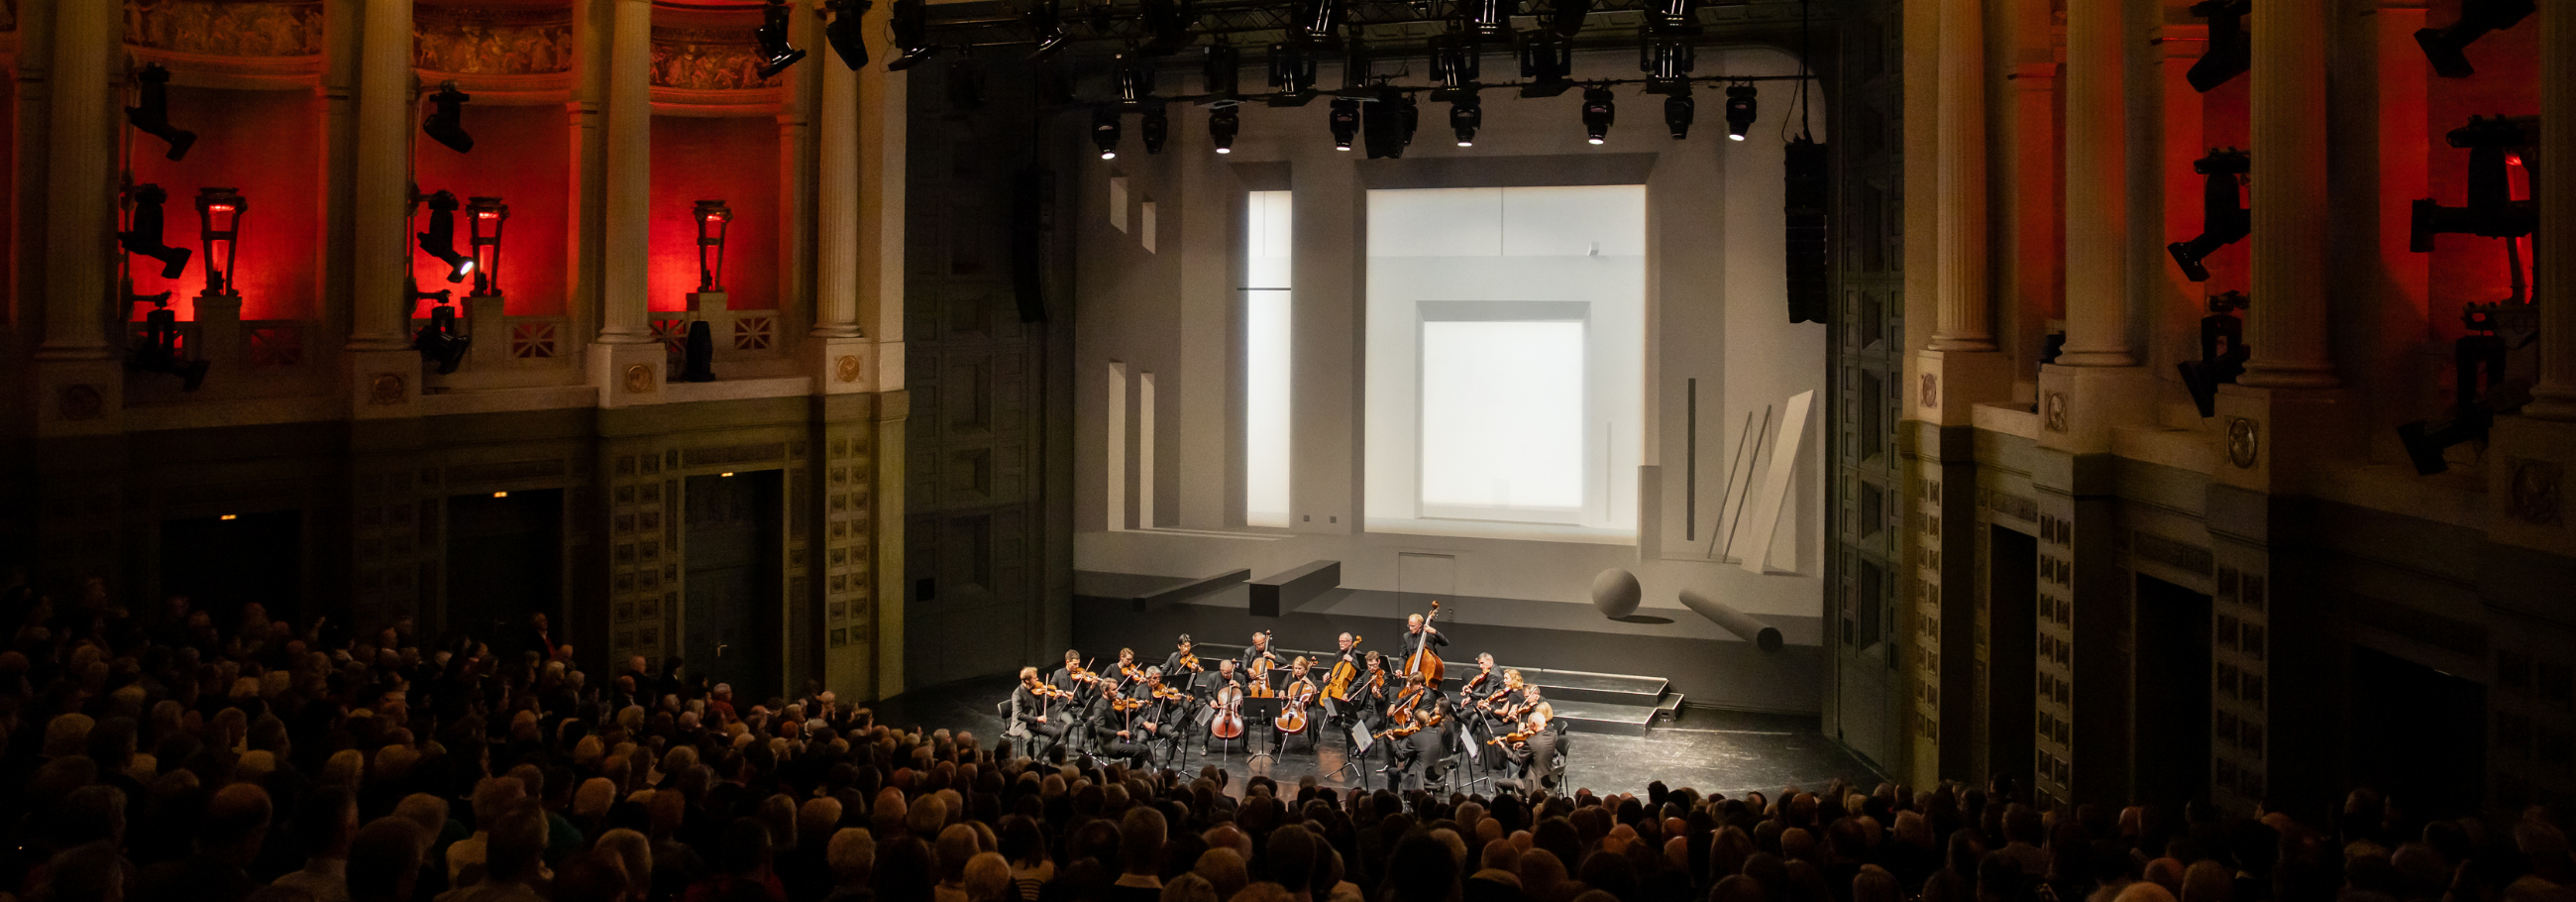 Prinzregententheater Kalender Event _ Konzertseite (2)